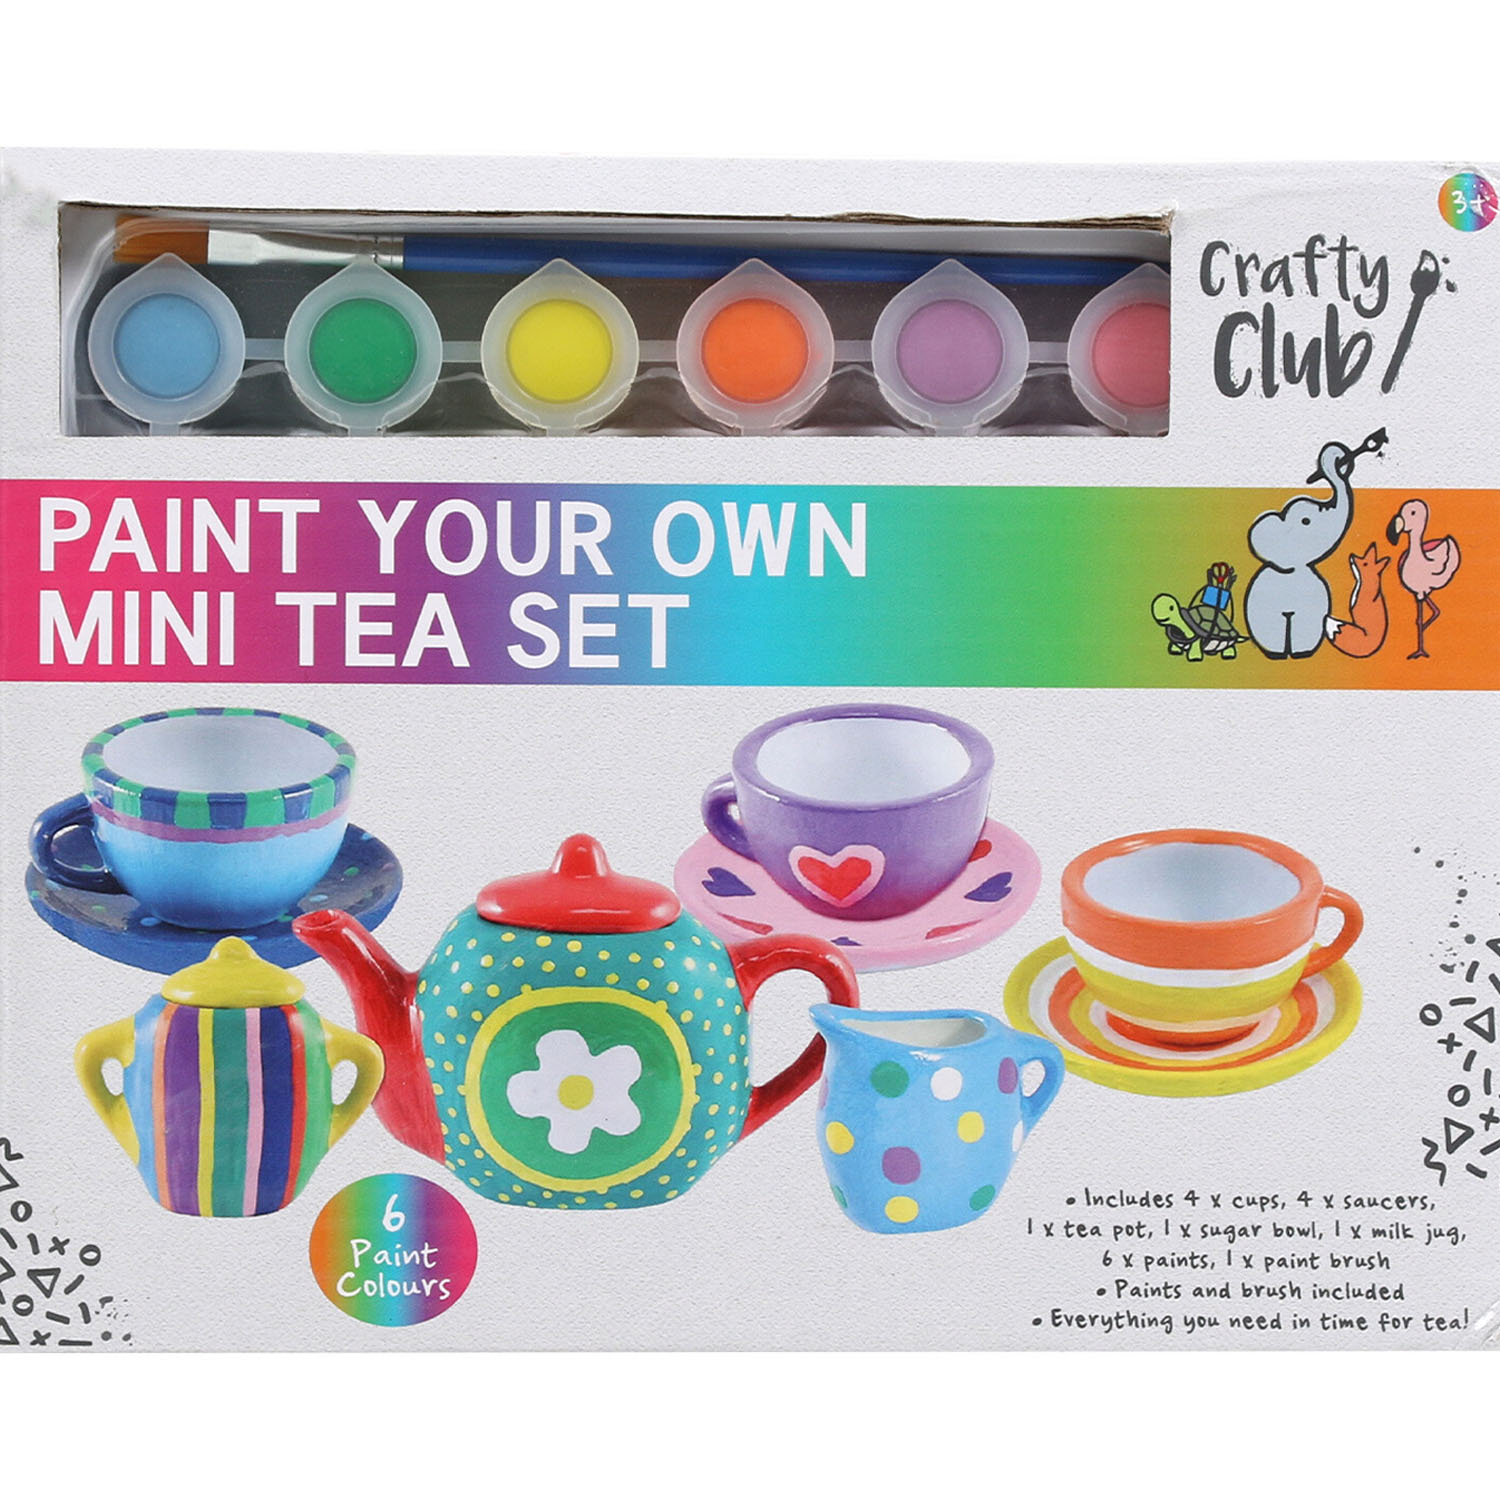 Paint Your Own Mini Tea Set Image